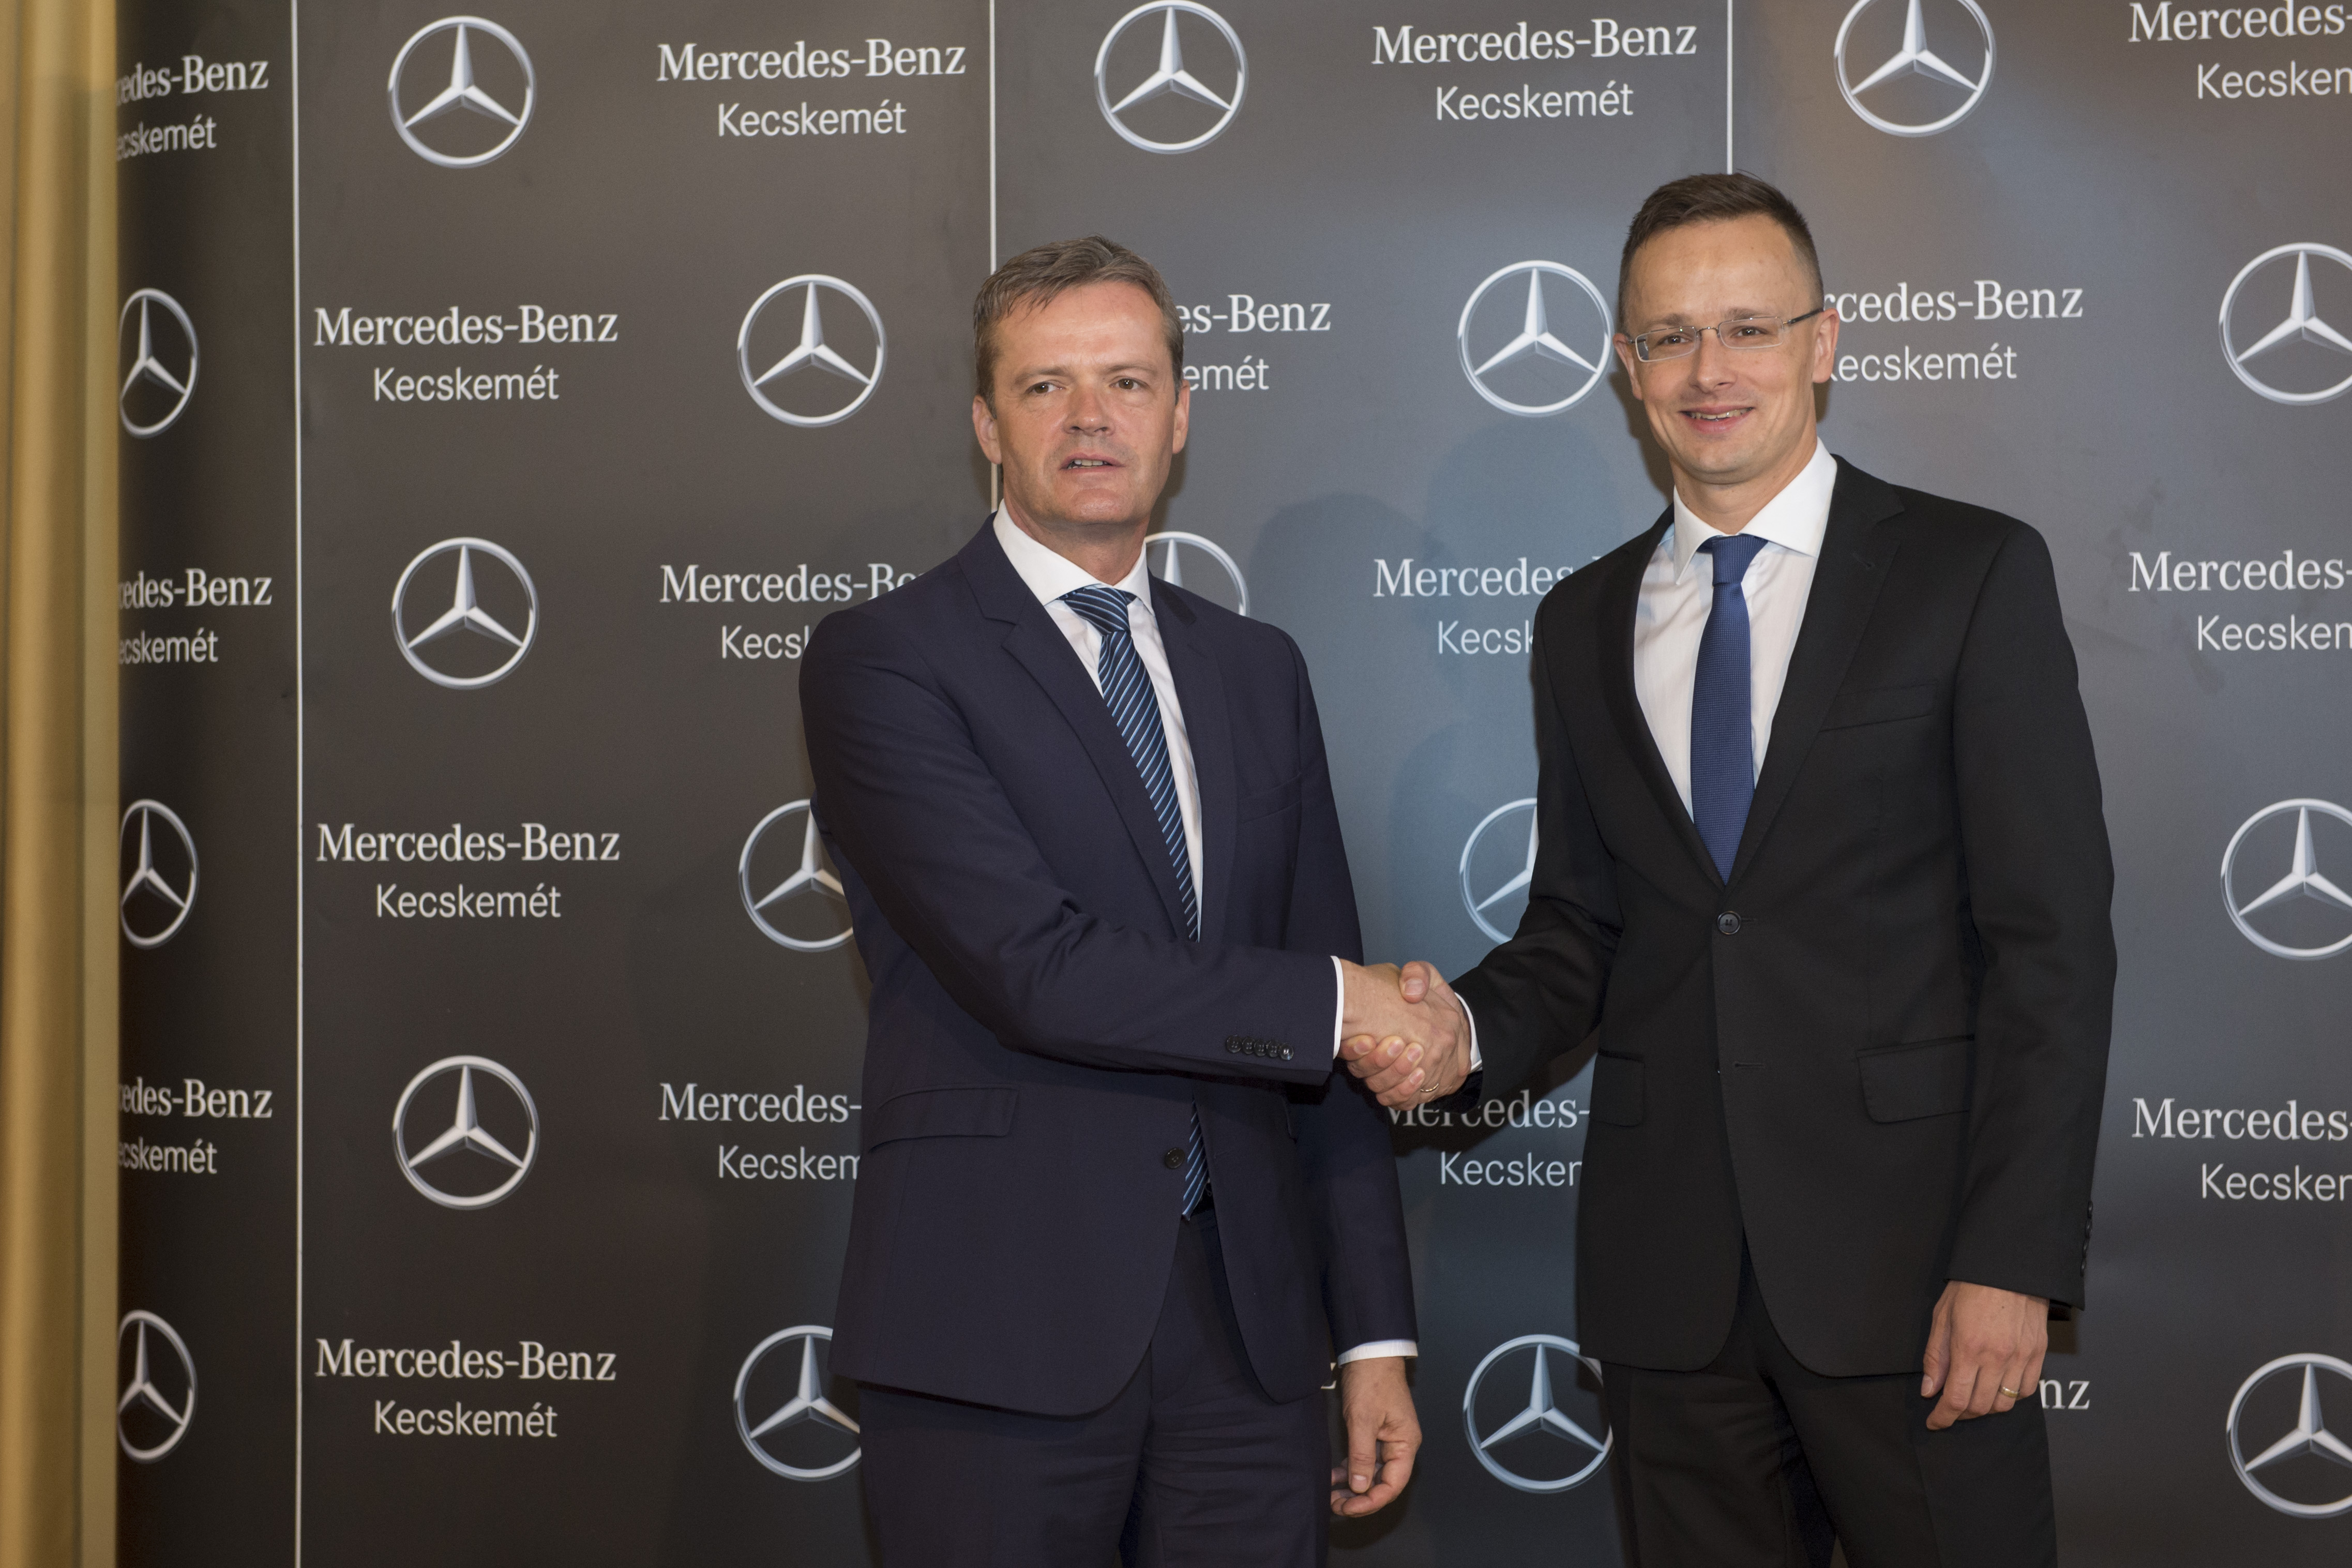  A Mercedes-Benz új kecskeméti gyára minden idők legnagyobb zöldmezős beruházása lesz hazánkban